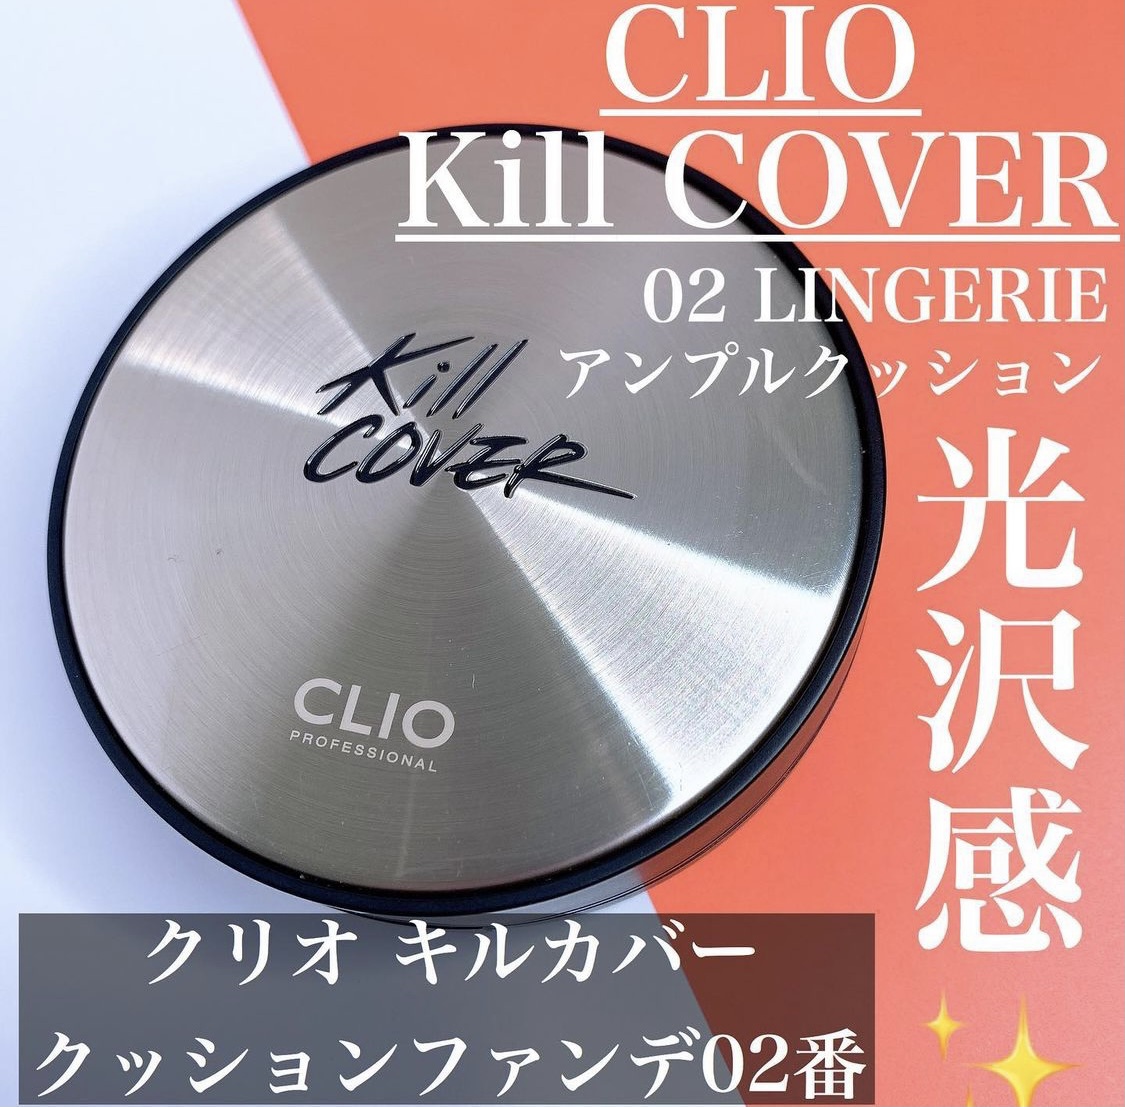 CLIO(クリオ) キル カバー アンプル クッションに関するaikさんの口コミ画像1